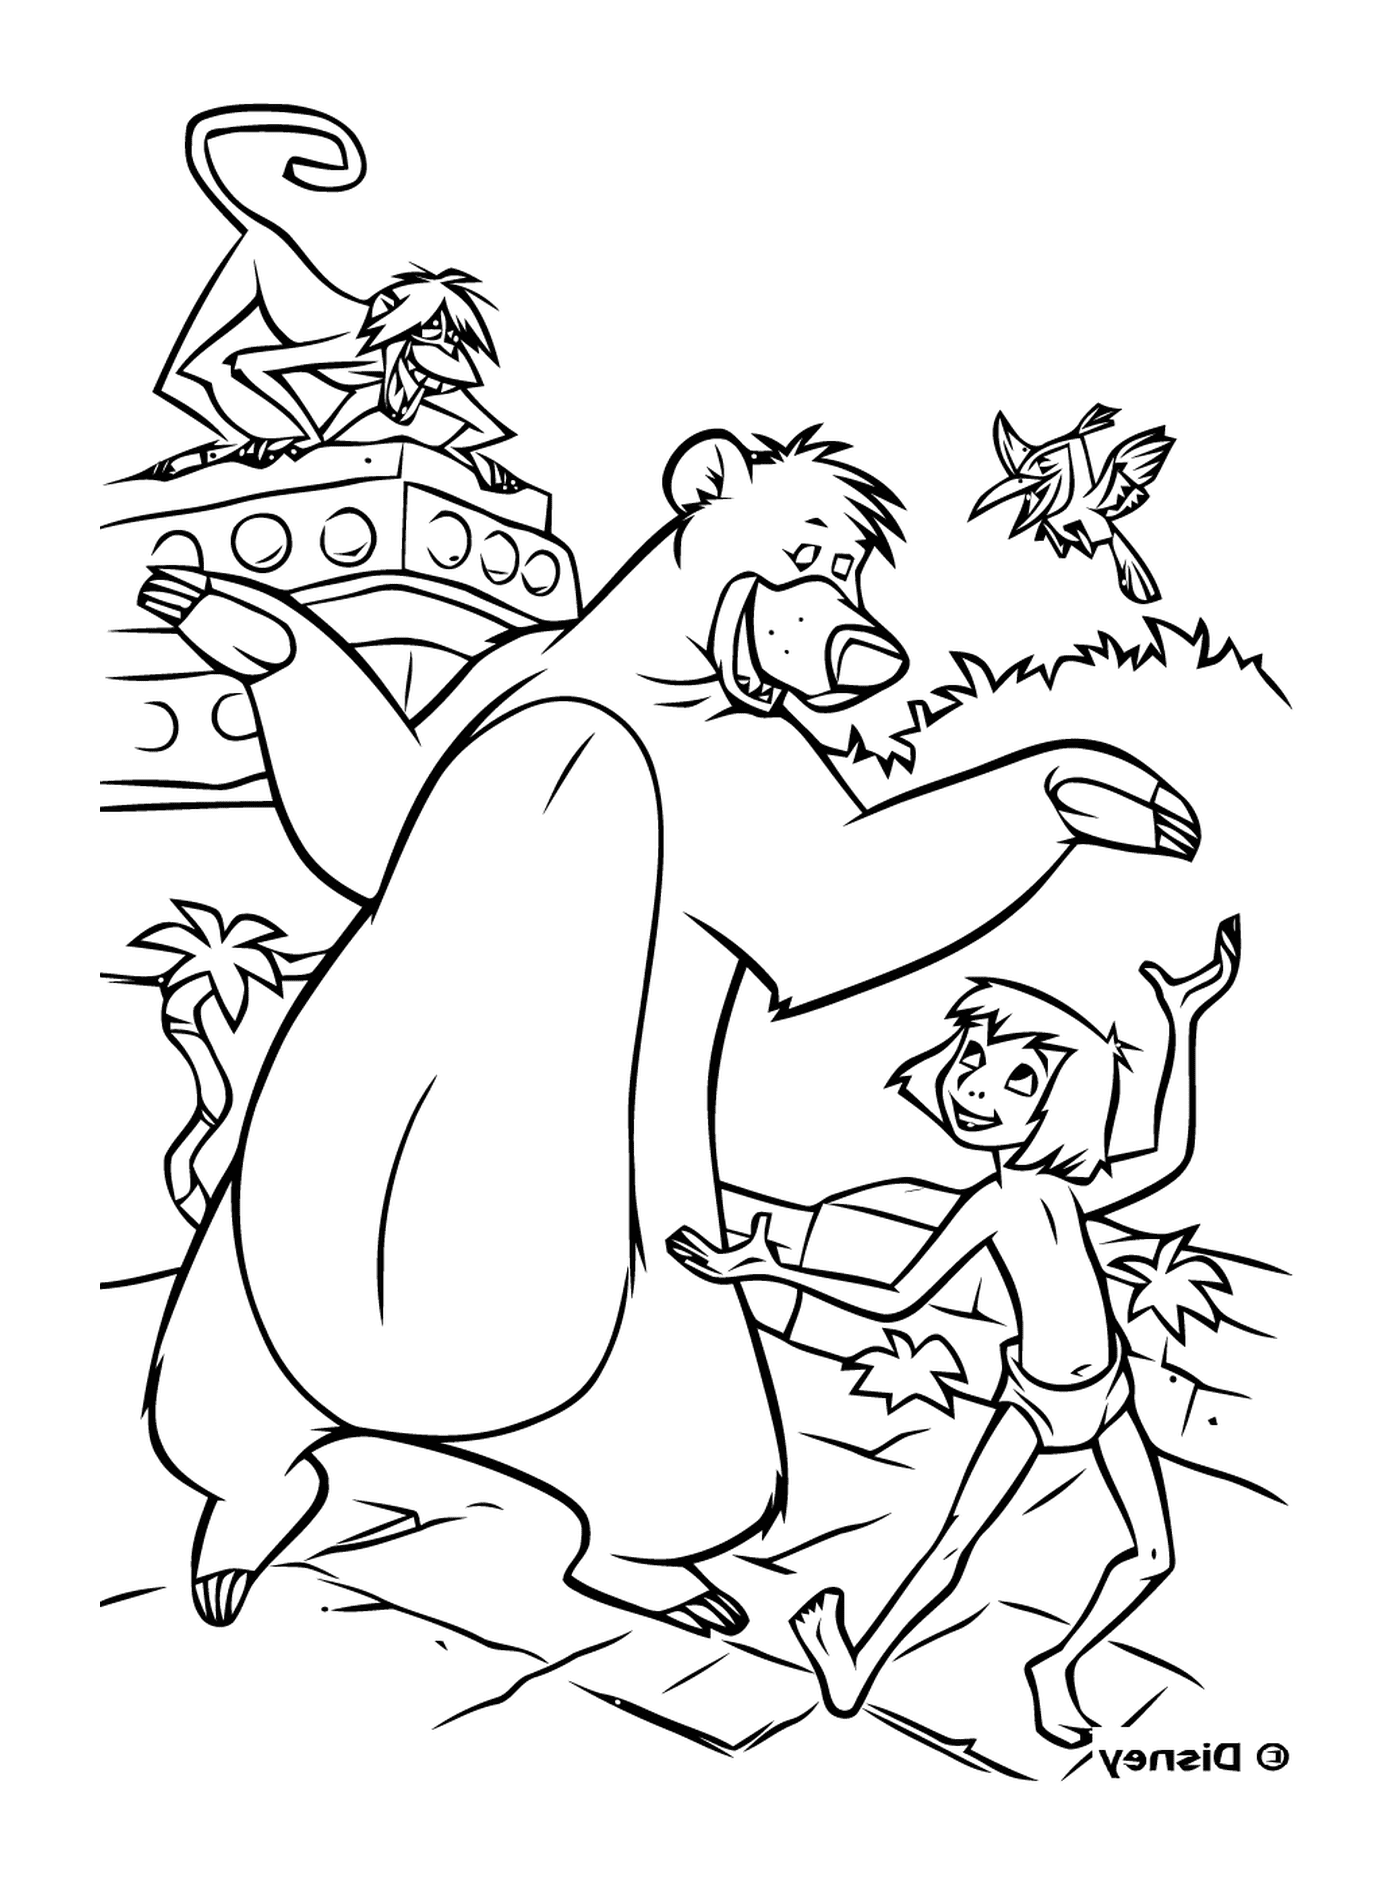   Un homme et un ours se tiennent devant un bateau 